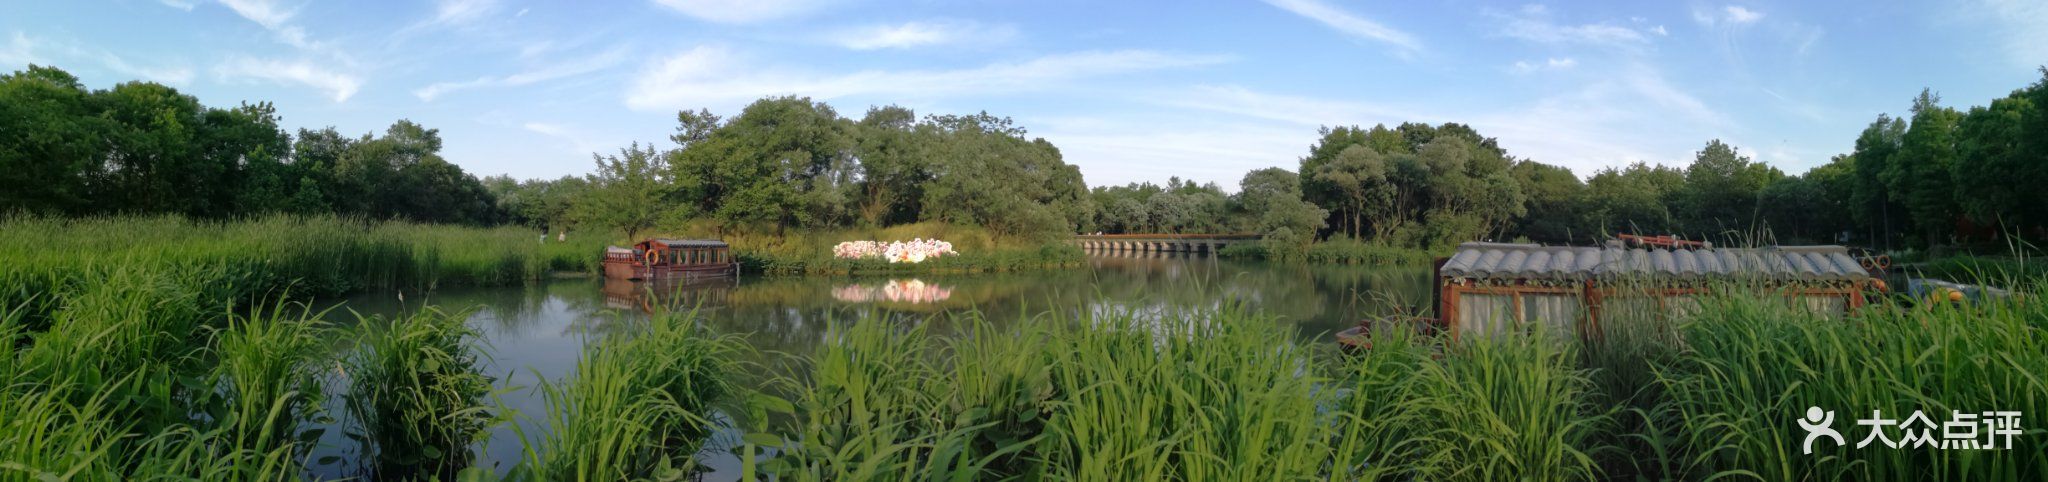 驻马店湿地植物园图片